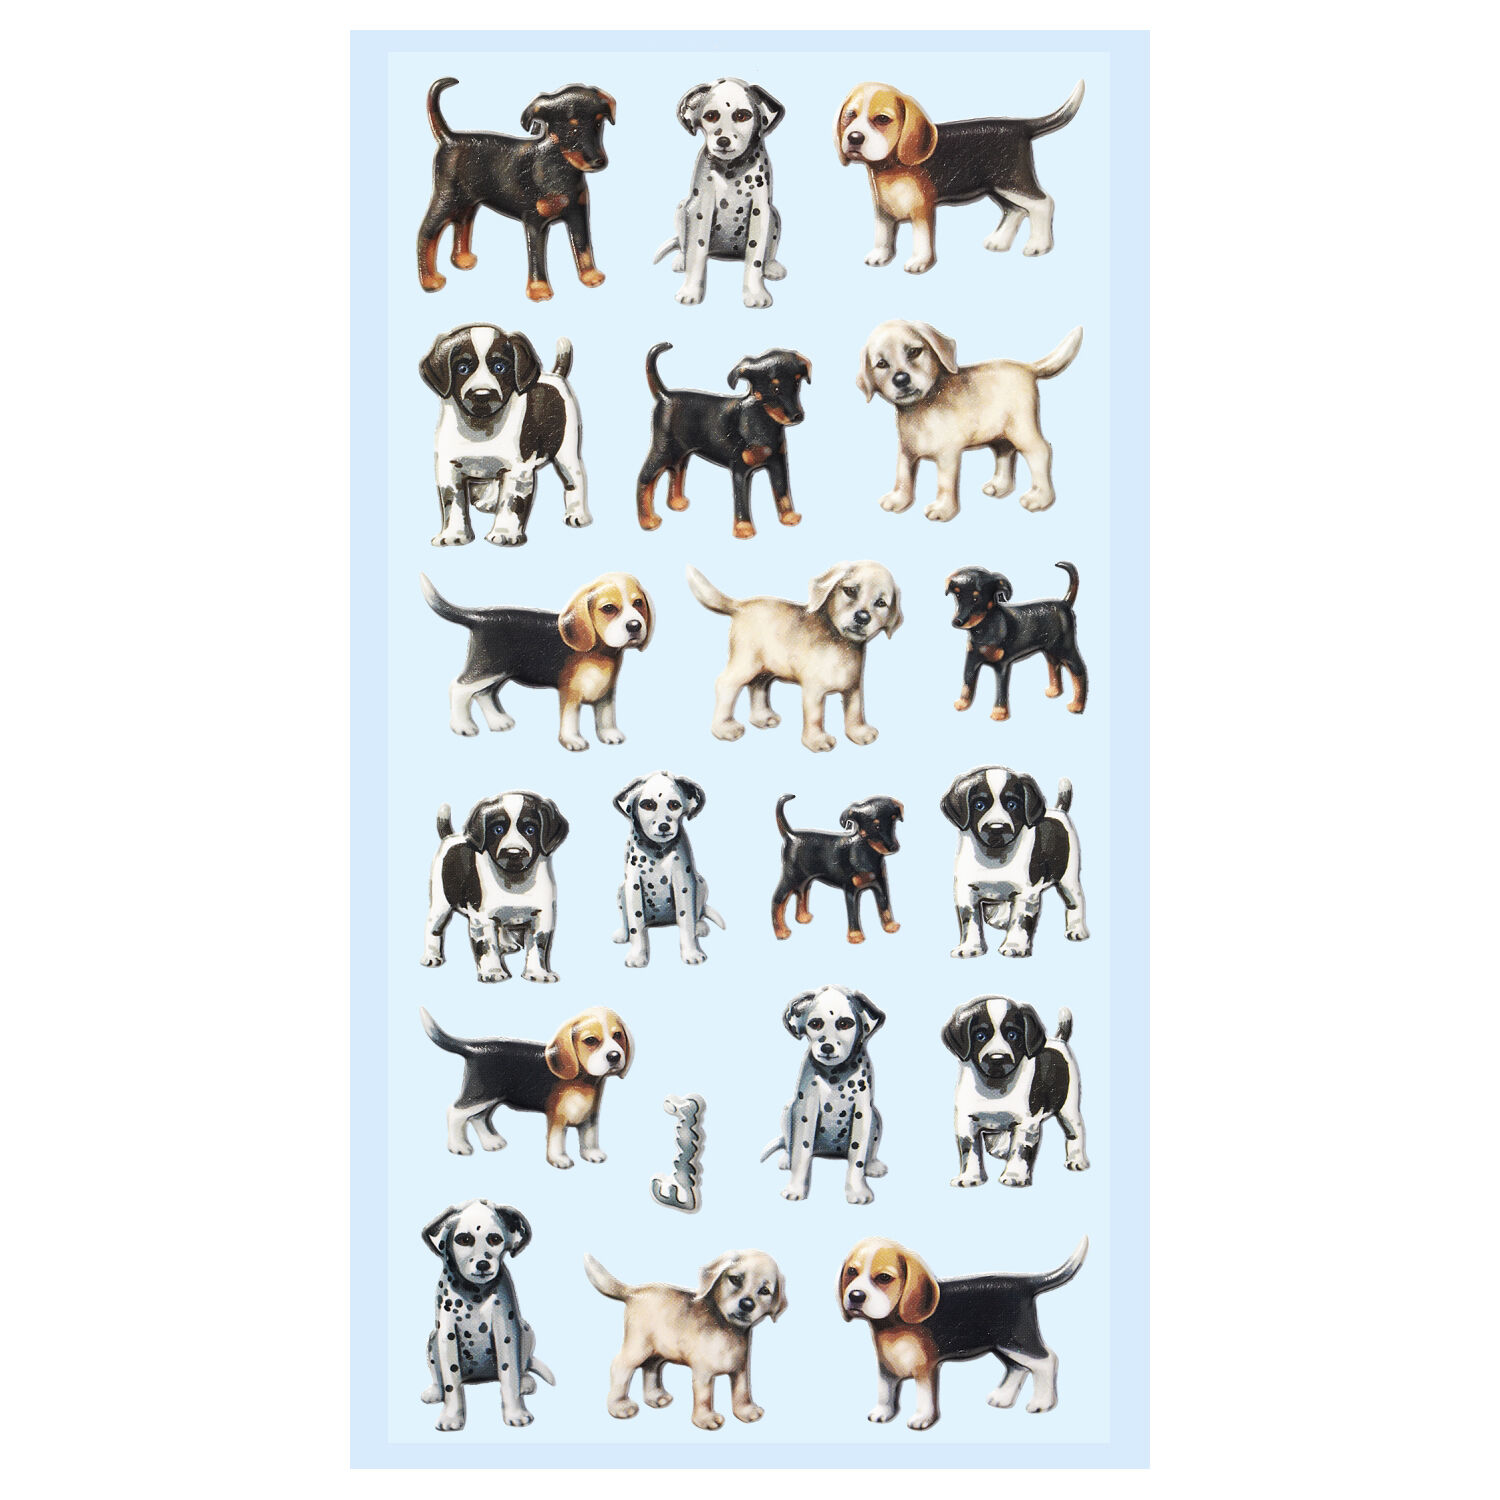 NEU SOFTY 3-D Sticker / Aufkleber, Hunde / Welpen, 1 Bogen